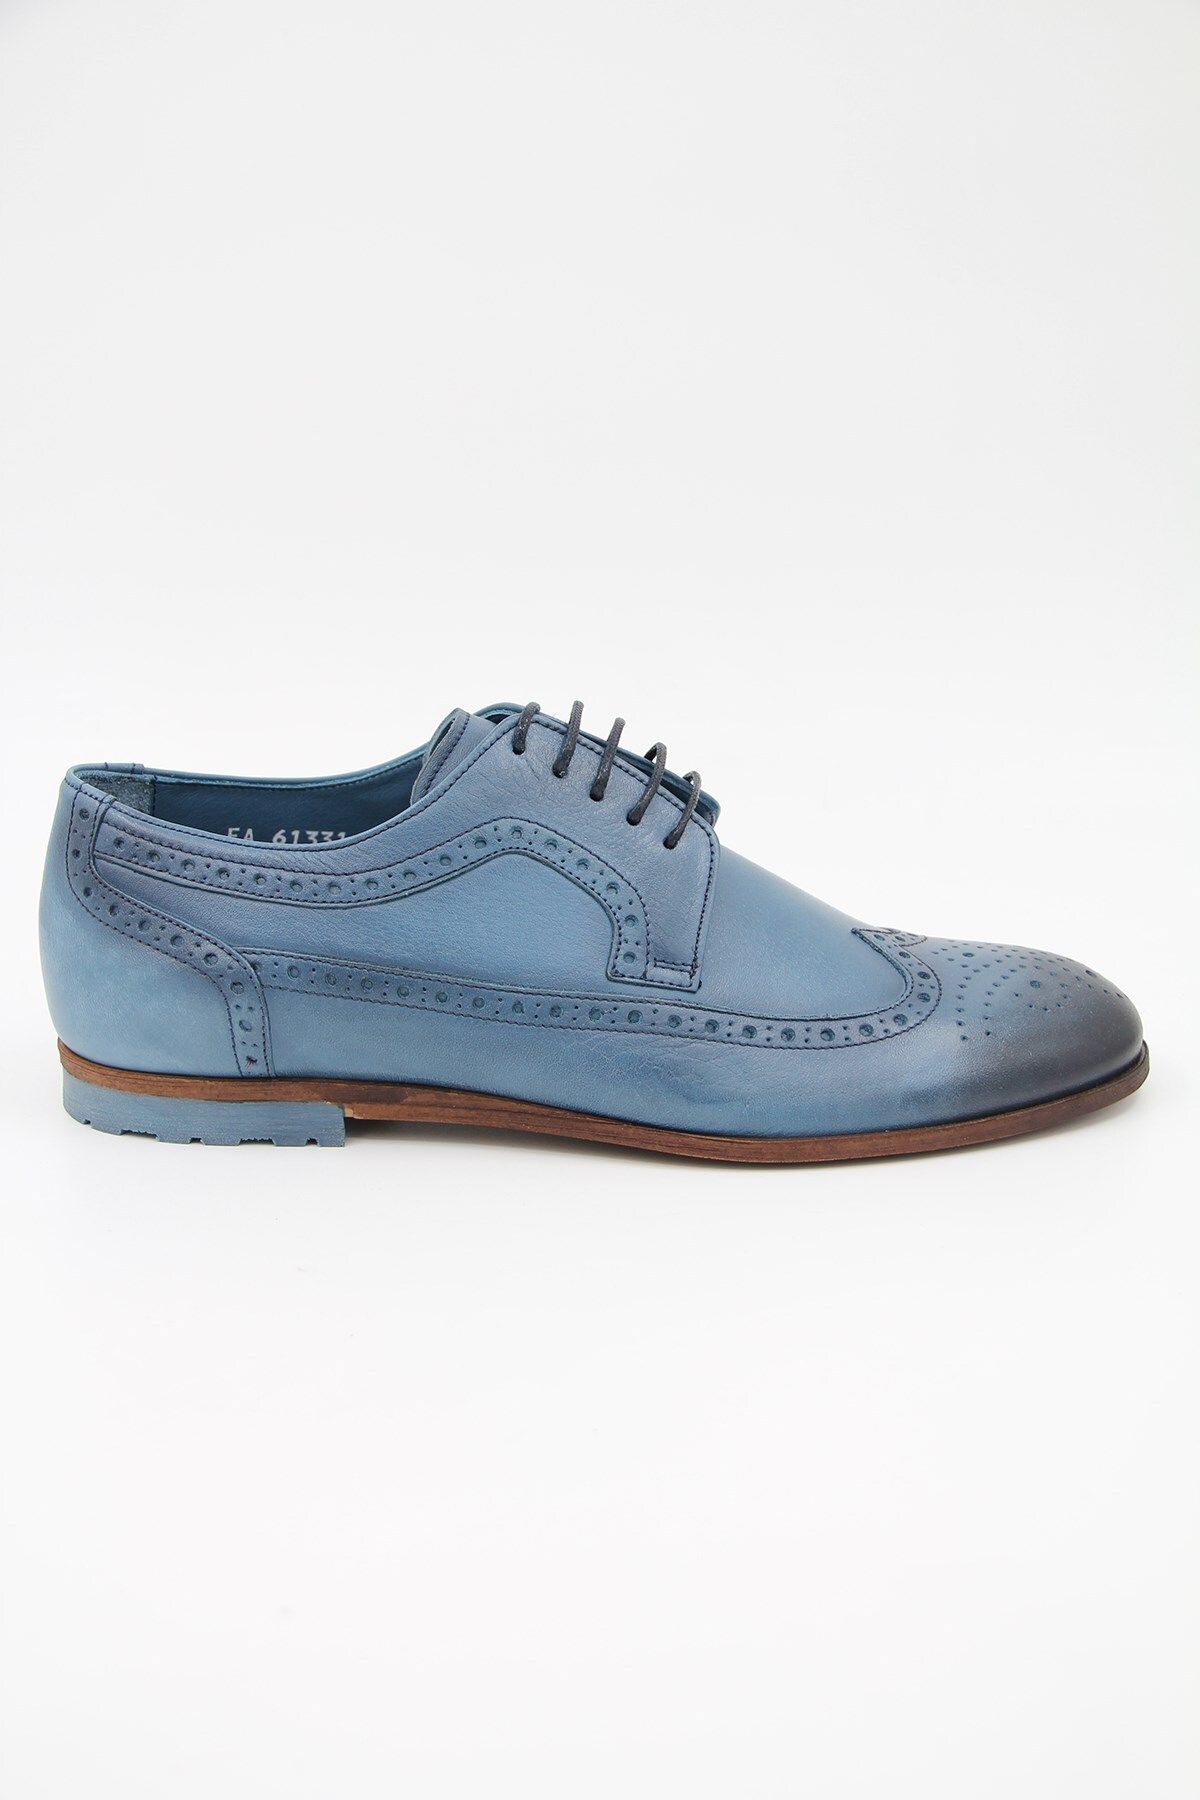 Greyder 7y1ka61331 Erkek Klasik Ayakkabı - Mavi